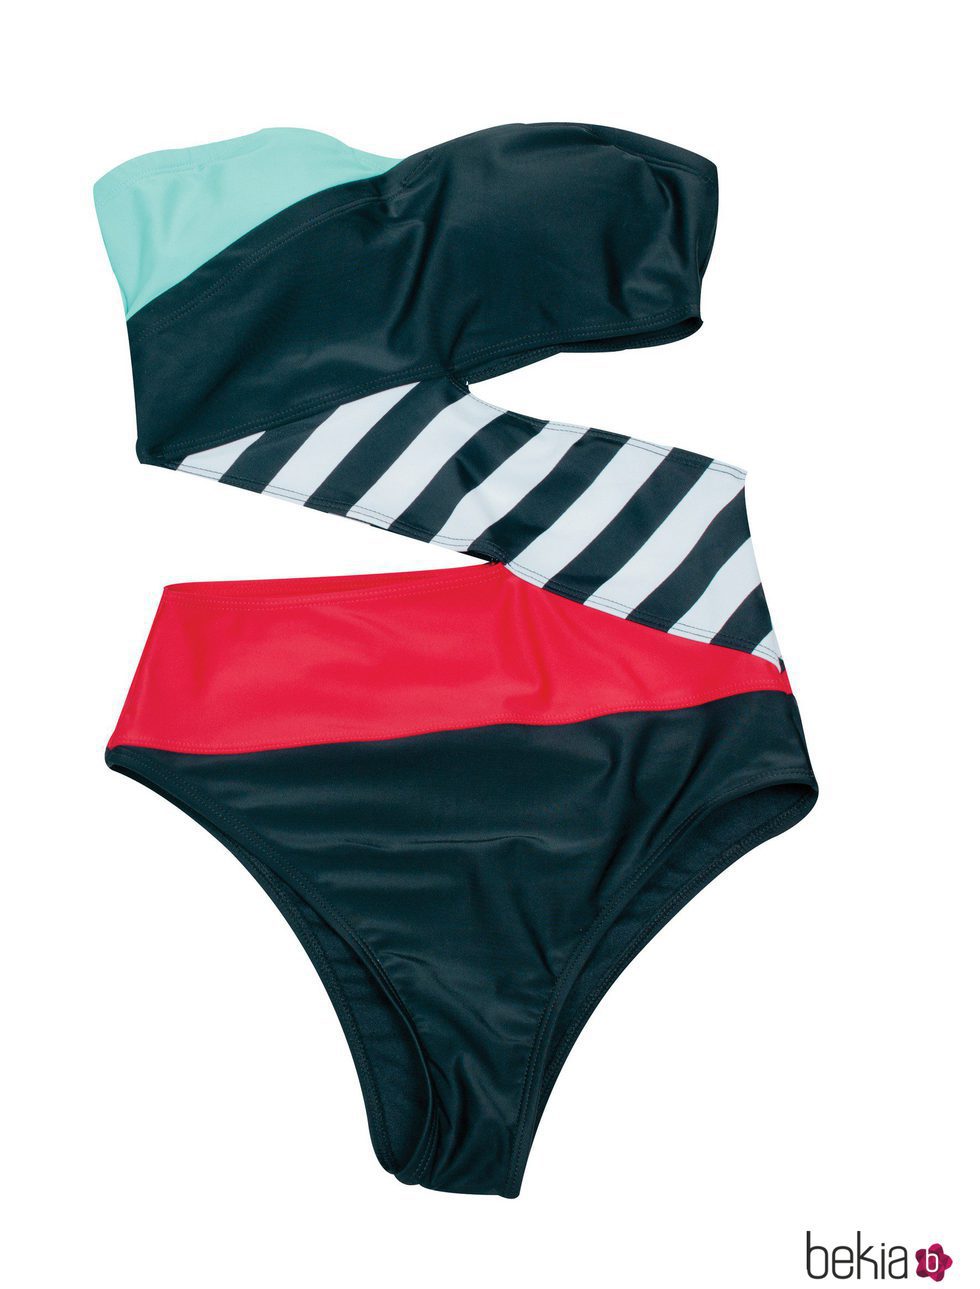 Trikini de la colección de ropa de baño verano 2012 de Volcom